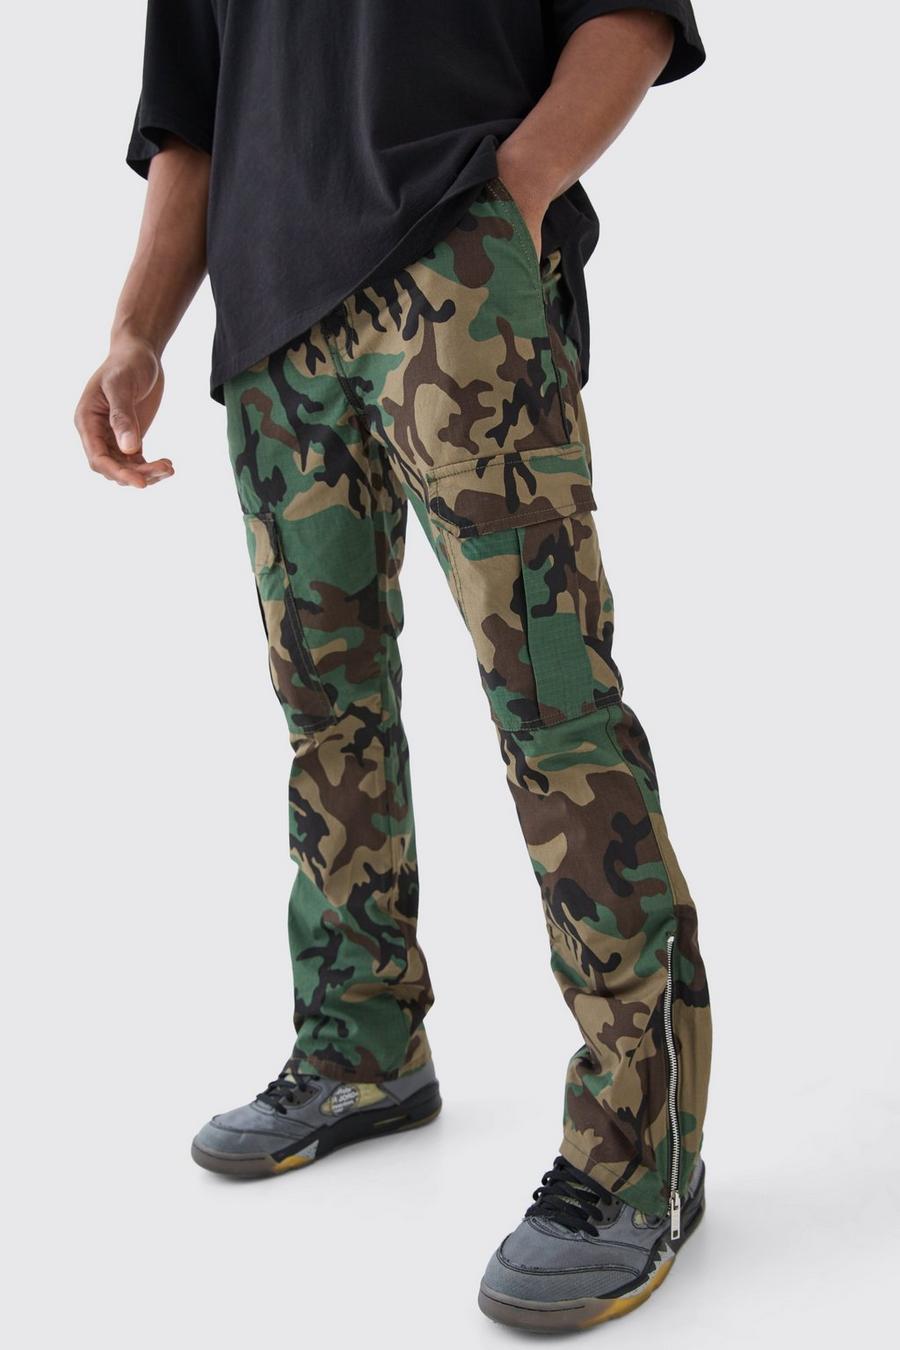 Pantaloni Cargo Slim Fit a zampa in nylon ripstop in fantasia militare con inserti e zip, Khaki image number 1